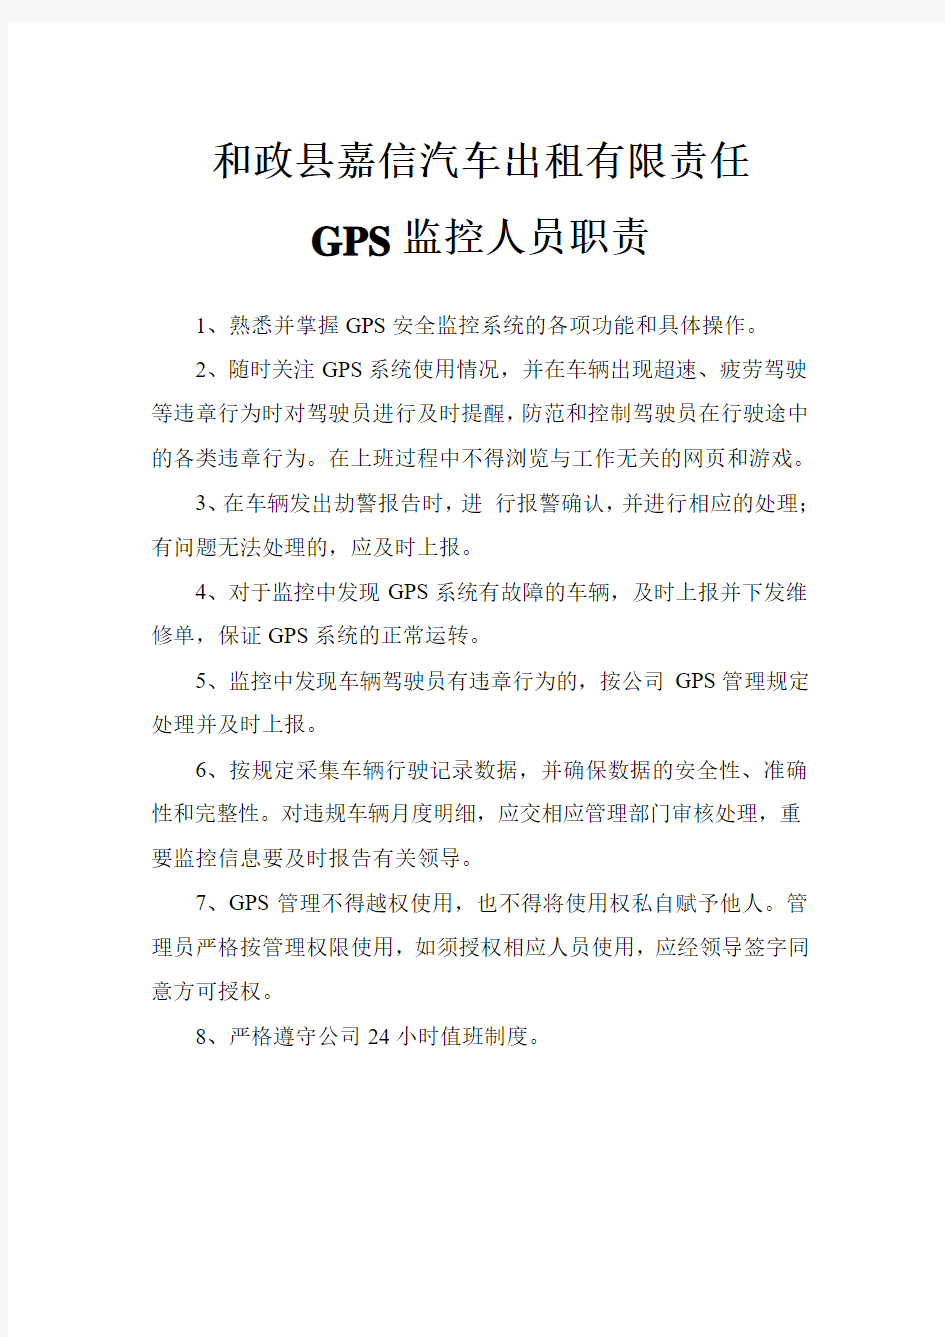 GPS监控人员职责